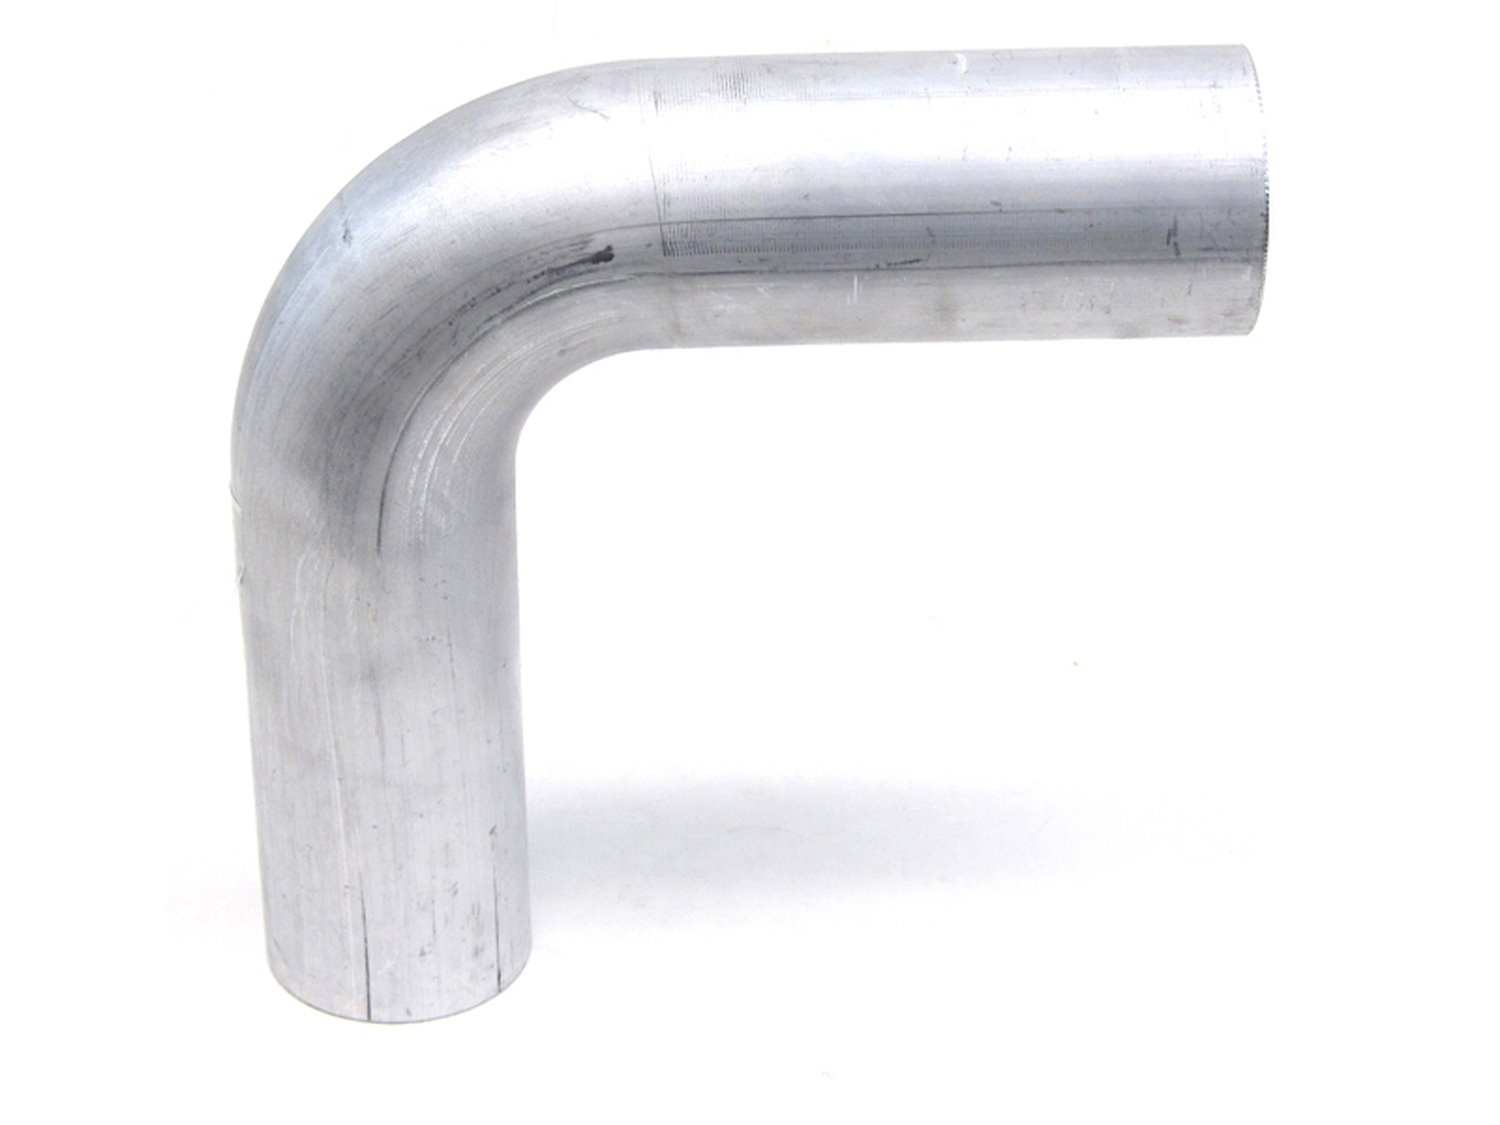 AT90-325-CLR-3 Aluminum Elbow Tube, 6061 Aluminum, 90-Degree Bend Elbow Tubing, 3-1/4 in. OD, Tight Radius, 3 in. CLR